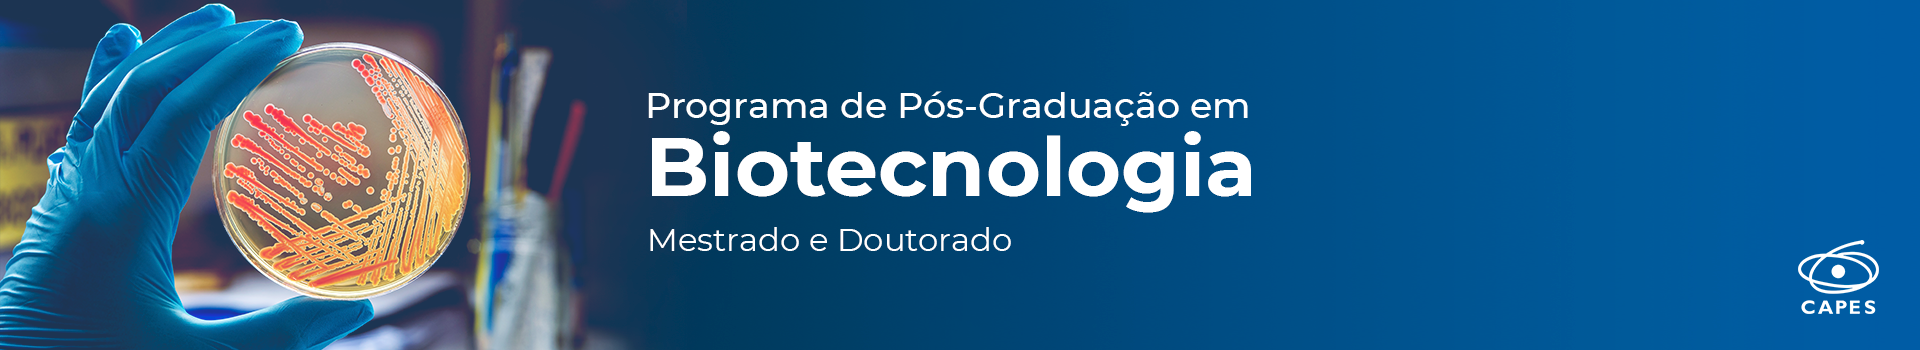 Programa de Pós-Graduação em Biotecnologia